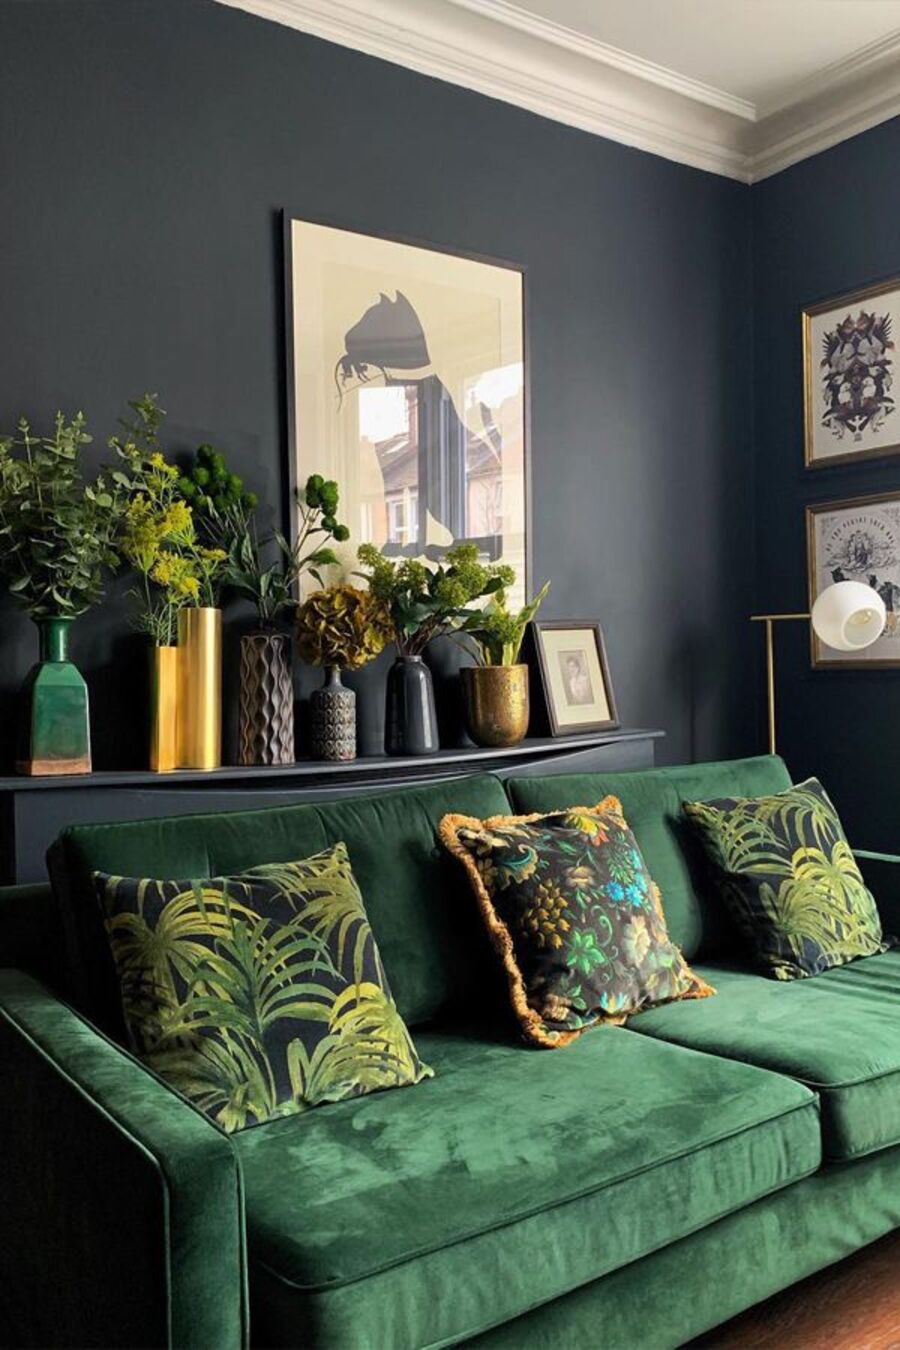 Sala de estar de paredes negras y sofá verde esmeralda con cojines con hojas tropicales verdes. Detrás del sofá hay un mueble negro que sostiene seis floreros de distintos colores y formas, los cuales contienen hojas verdes de diferentes tipos. 